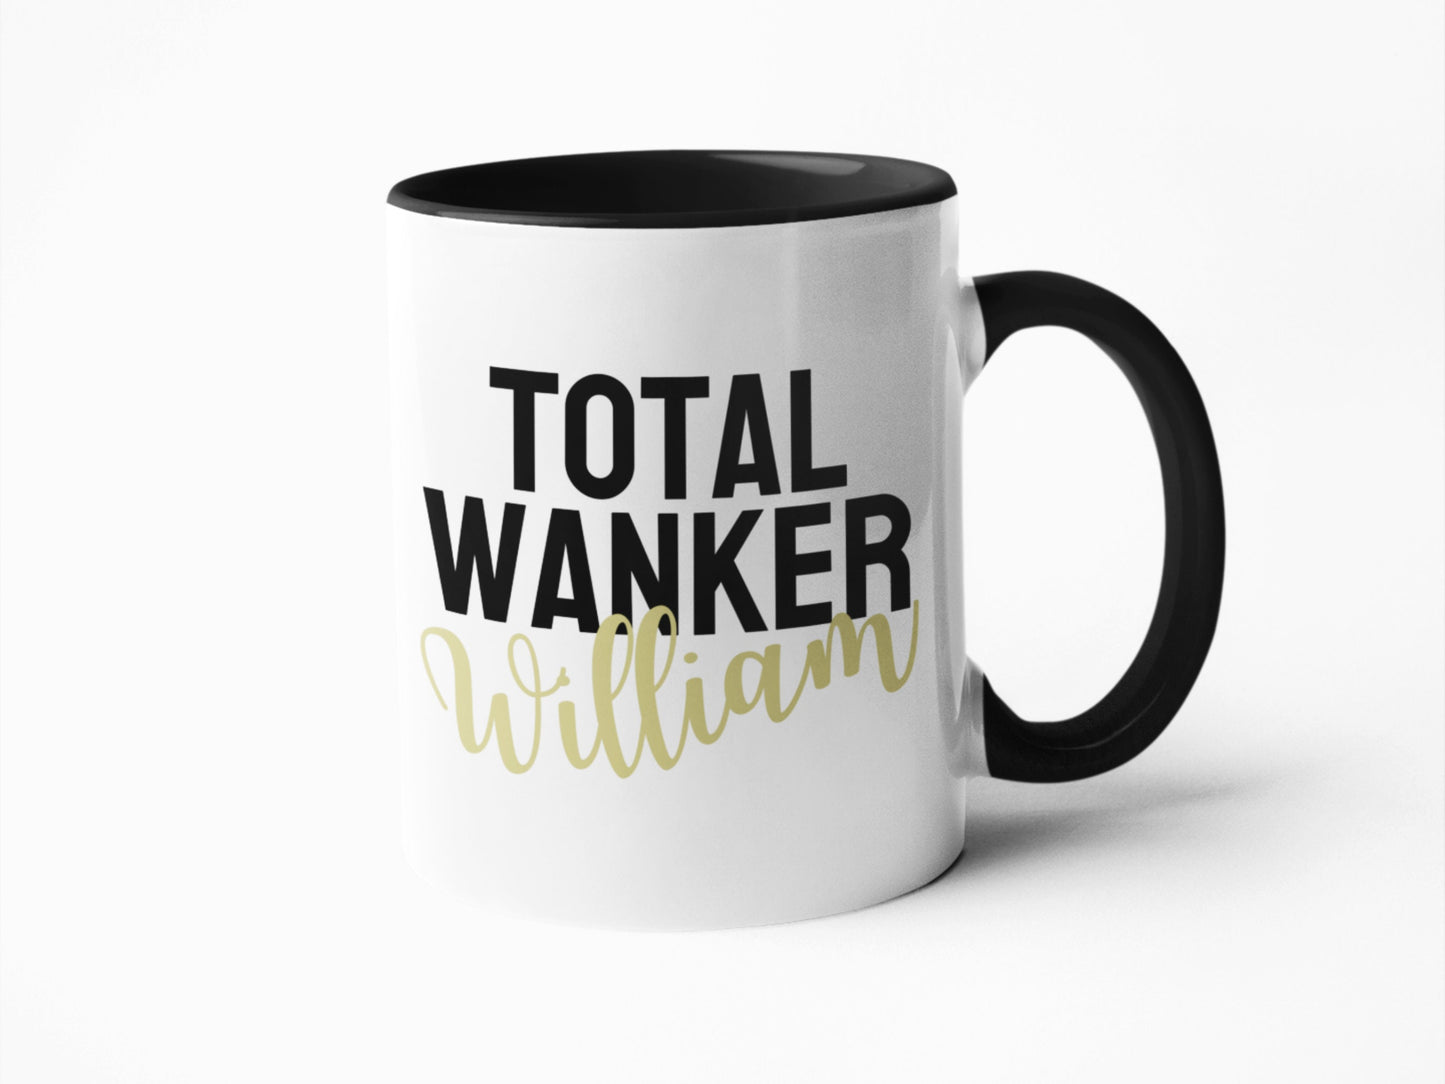 Total Wanker Mug, funny coffee mug, birthday for him gifts